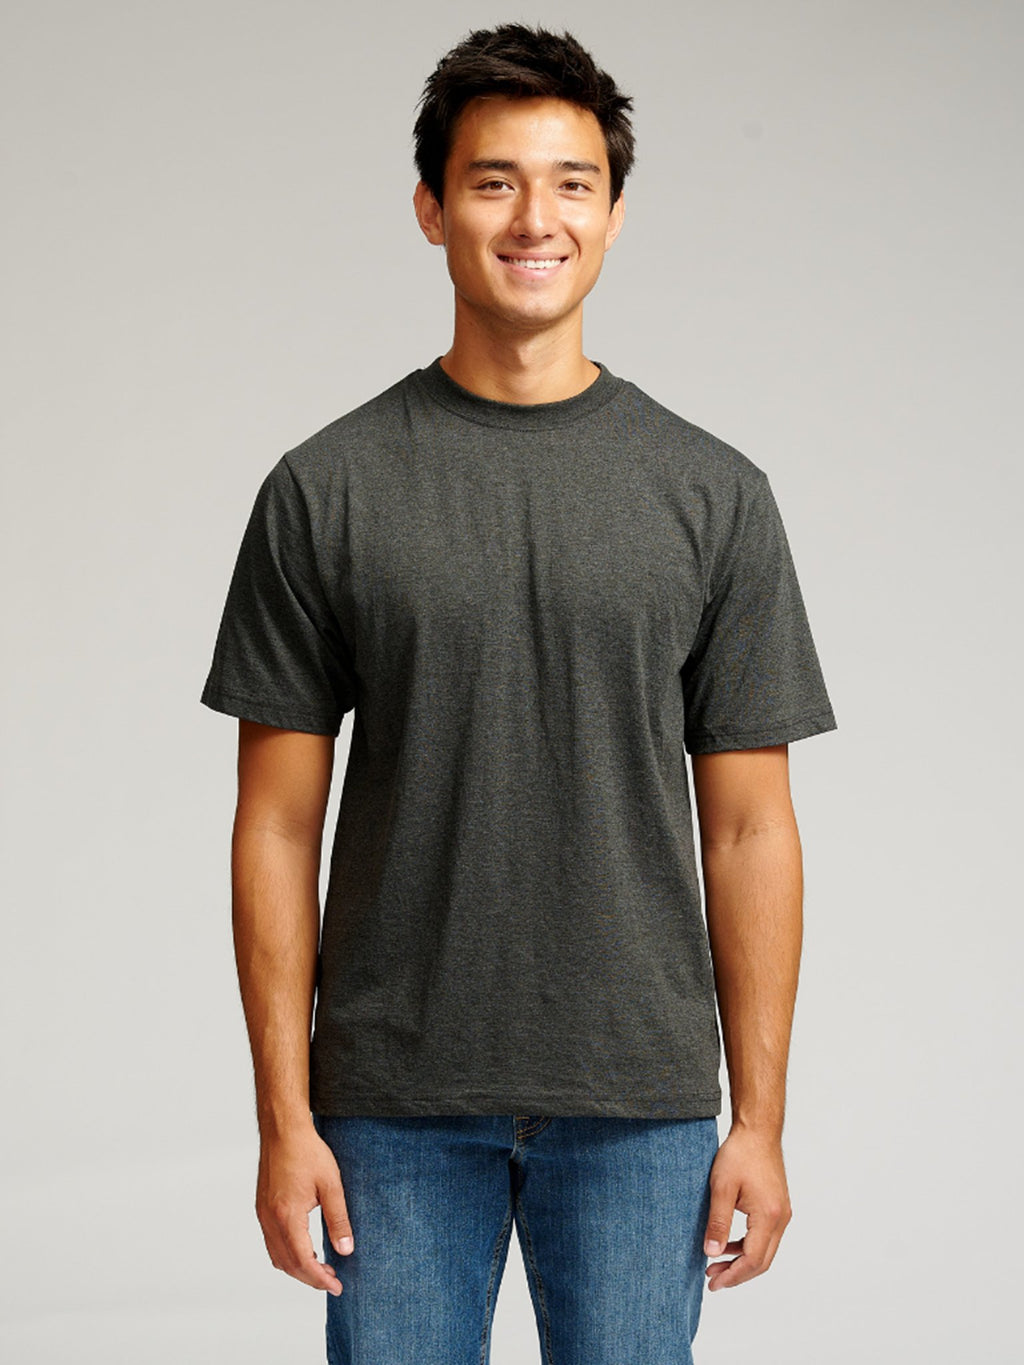 T-shirt surdimensionné - gris foncé